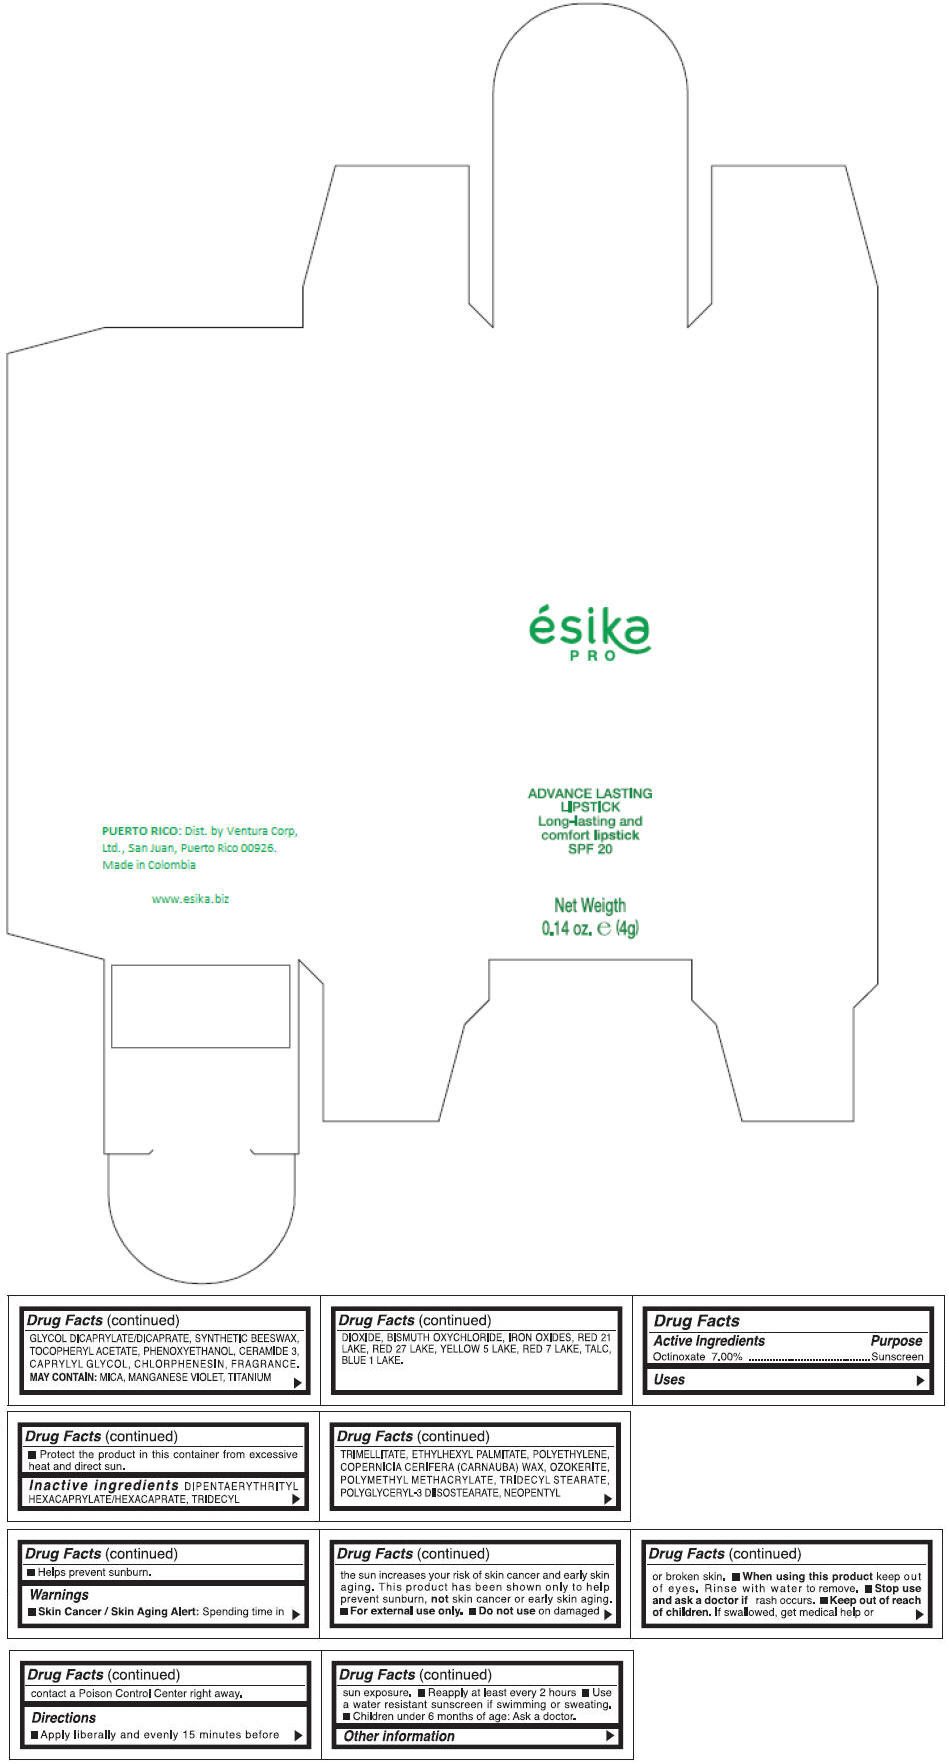 PRINCIPAL DISPLAY PANEL - 4 g Tube Box - (FUCSIA SUBLIME) - PINK